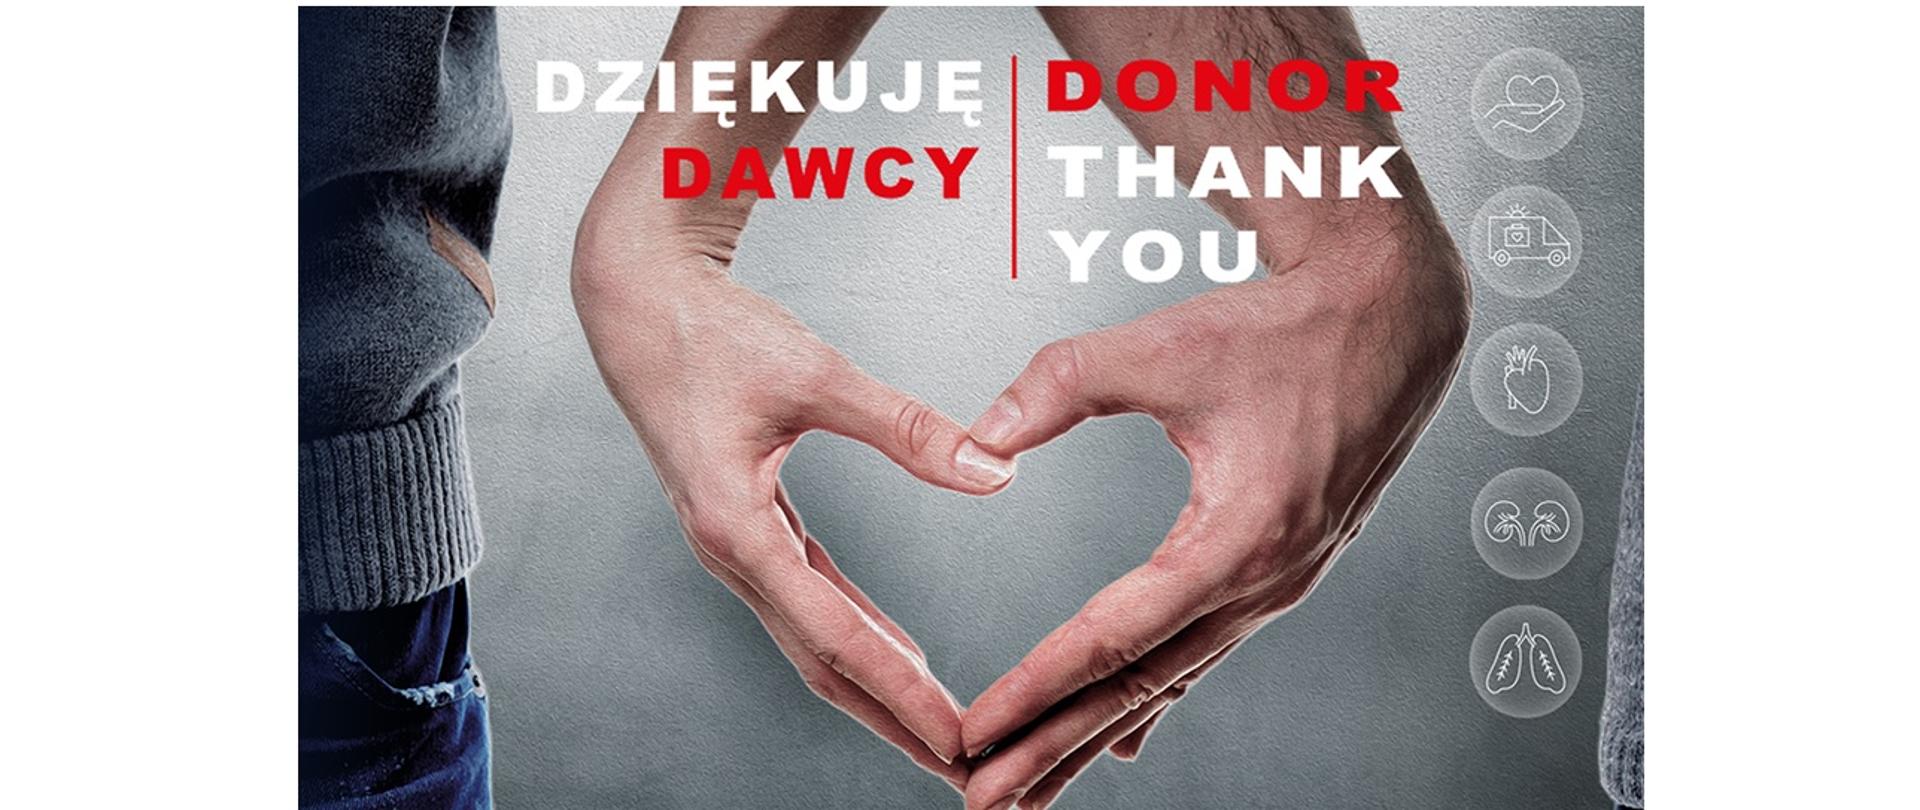 Plakat przedstawia dwie, złączone ludzkie dłonie. Palce dłoni układają się w kształt serca. Na górze plakatu znajduje się biało-czerwony napis w języku polskim o treści "Dziękuje dawcy" oraz napis biało-czerwony napis w języku angielskim o treści " Donot thank you"